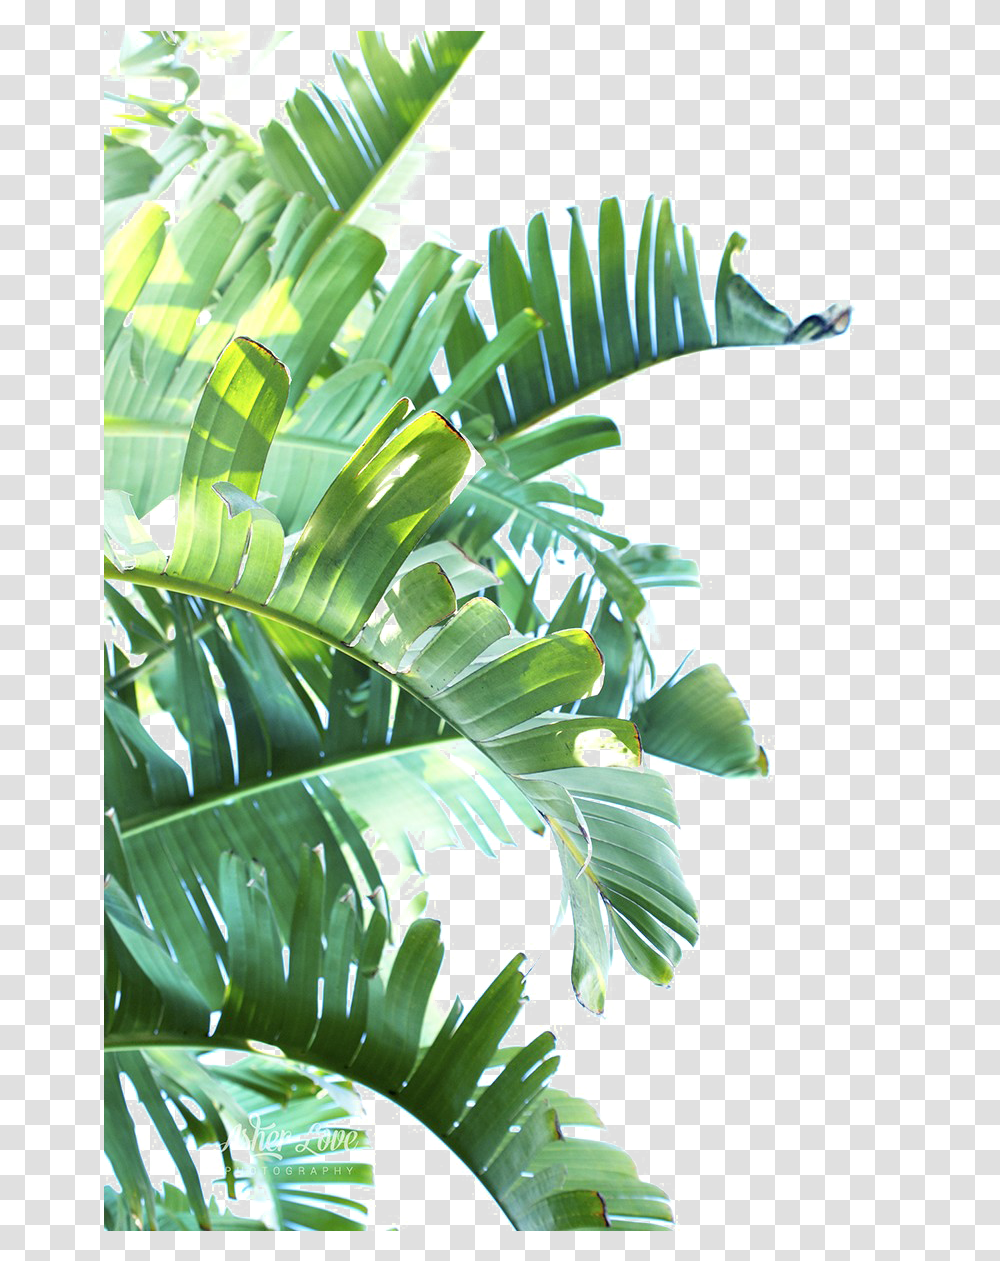 Green Leaf Clipart Tropical Leaves, Vegetation, Plant, Rainforest, Land Transparent Png